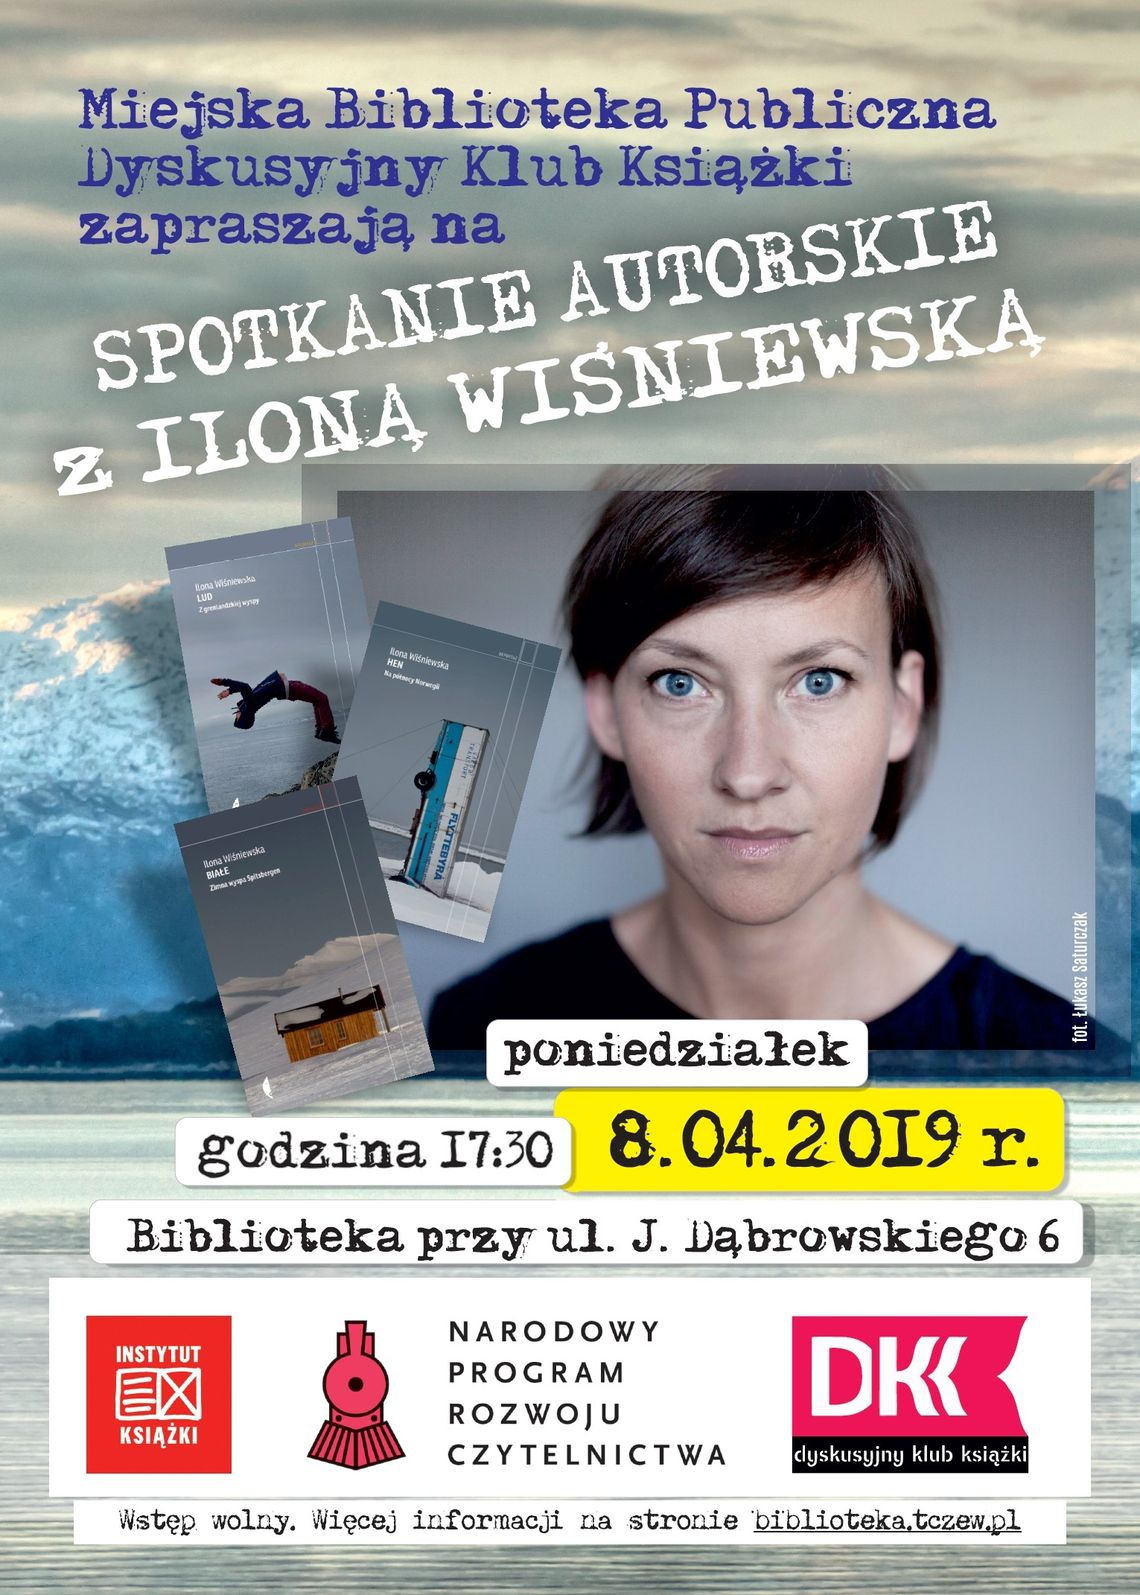 Spotkanie autorskie: Ilona Wiśniewska